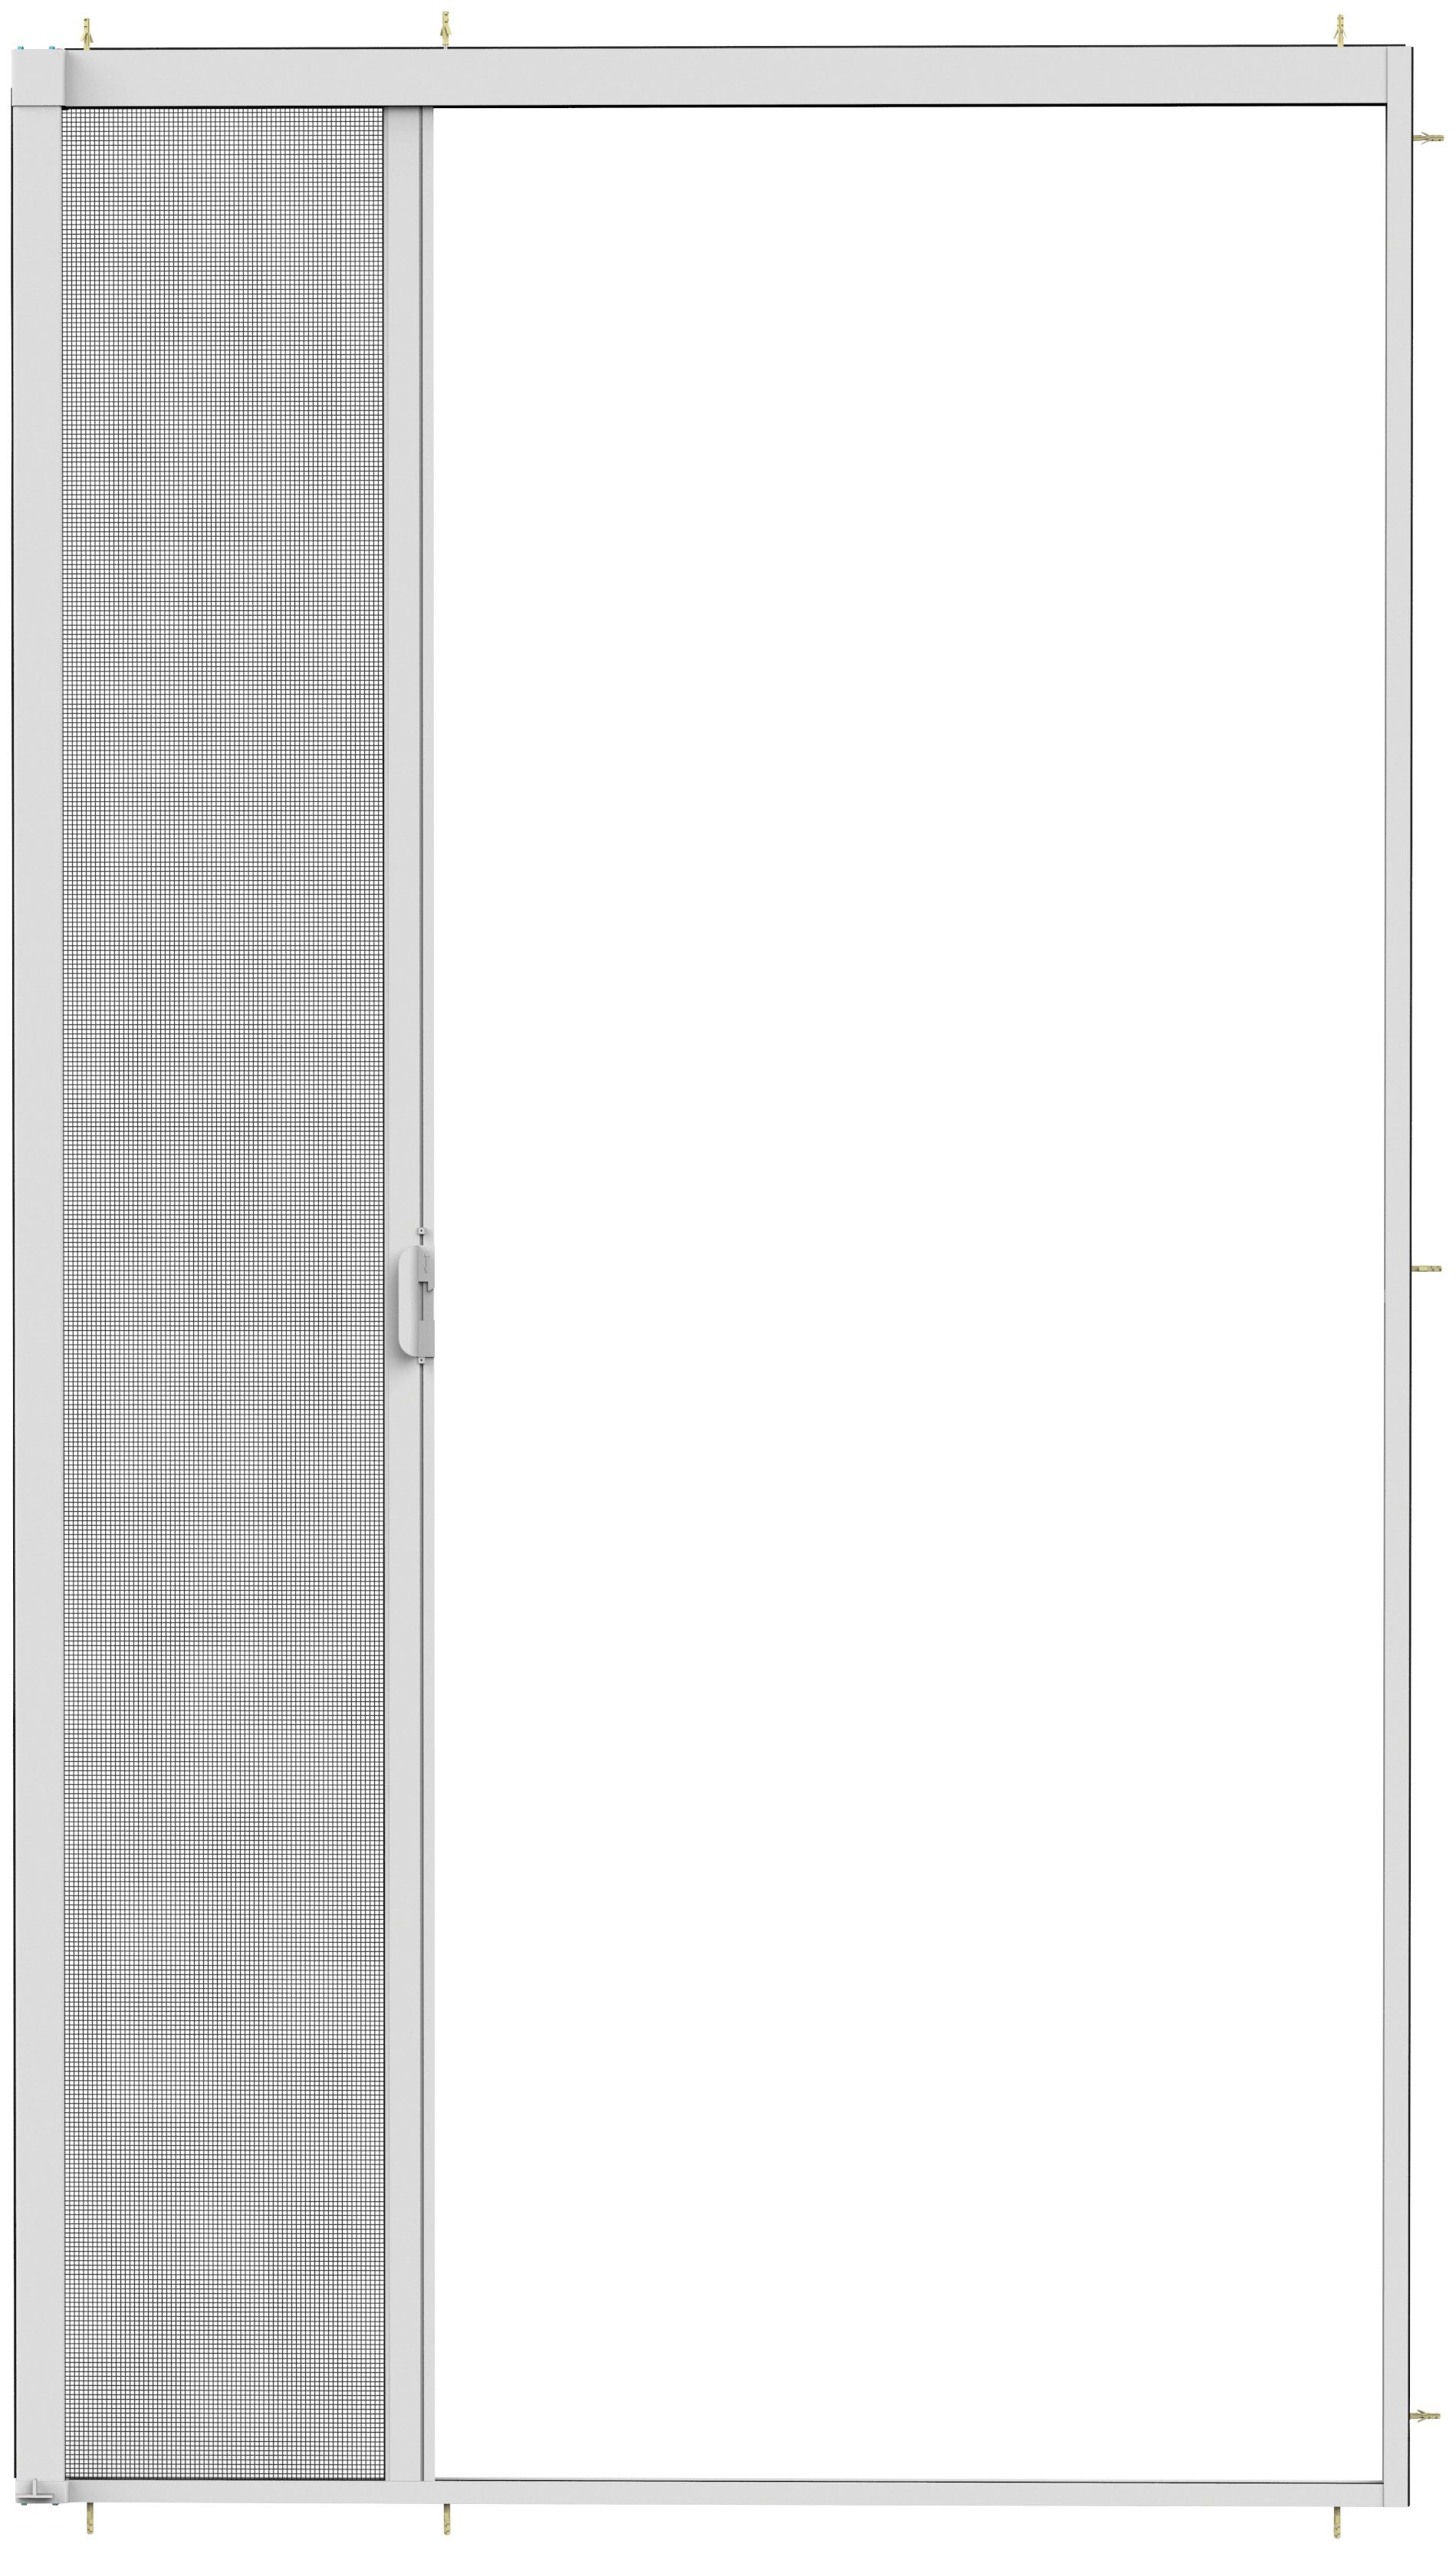 Insektenschutzrollo SMART, für 160x220 transparent, BxH: hecht international, weiß/anthrazit, Türen, verschraubt, cm